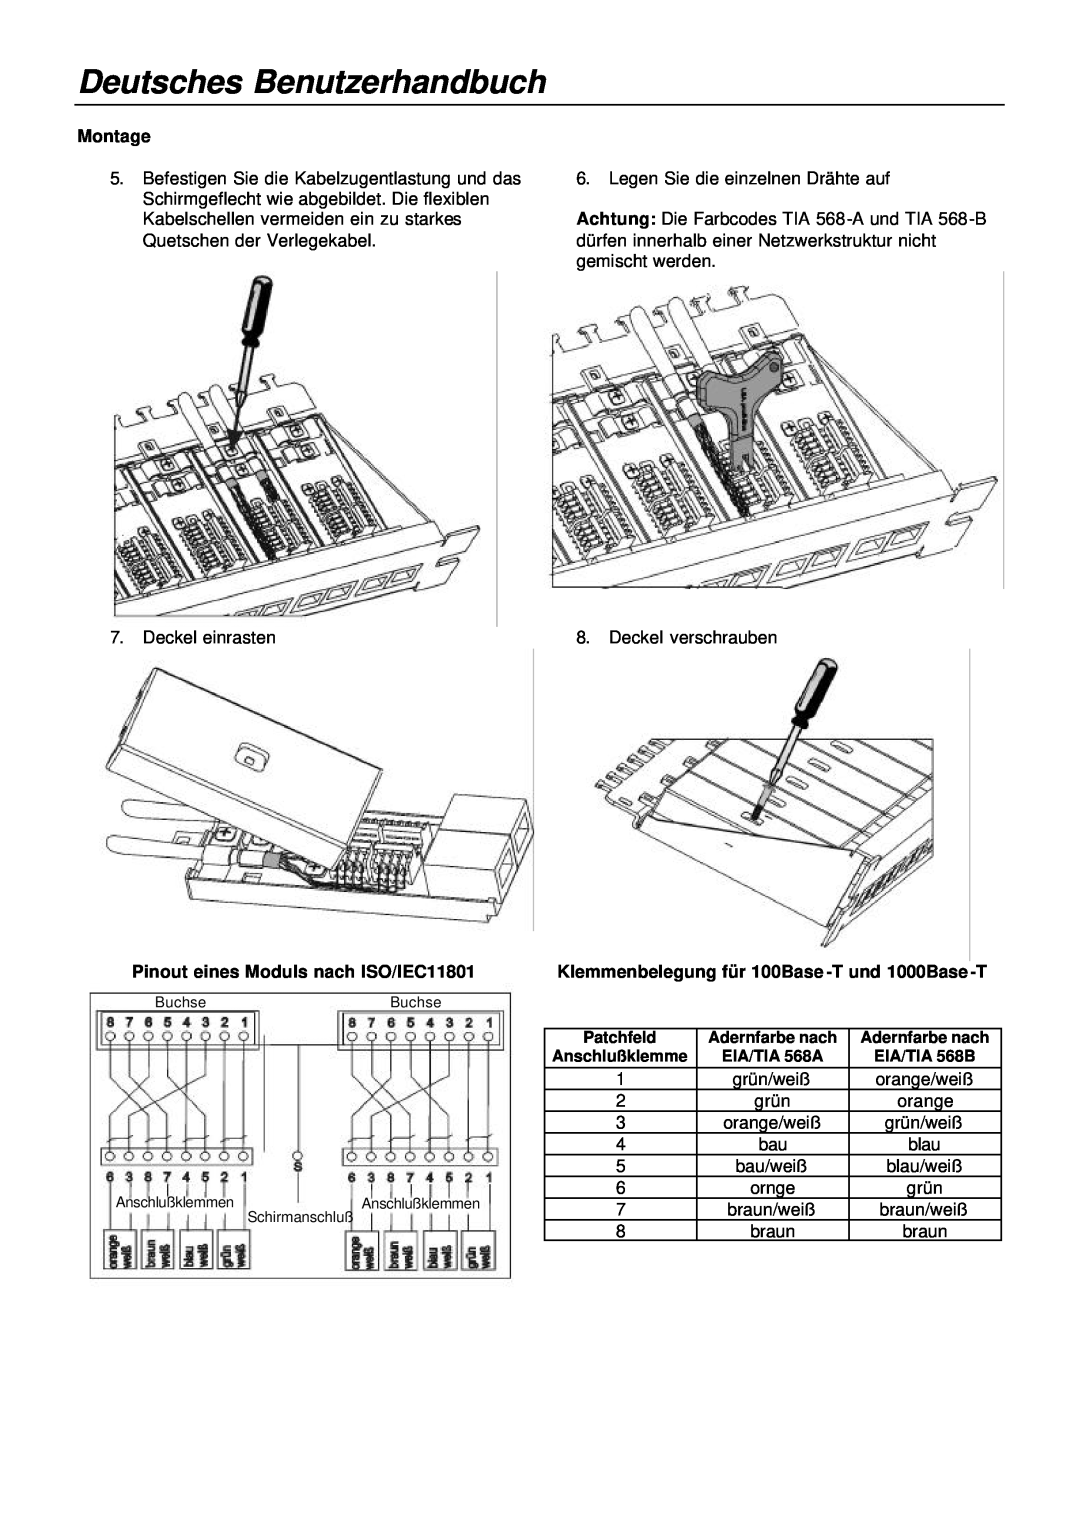 Lindy 20703, 20704 manual Deutsches Benutzerhandbuch, Montage, Pinout eines Moduls nach ISO/IEC11801 